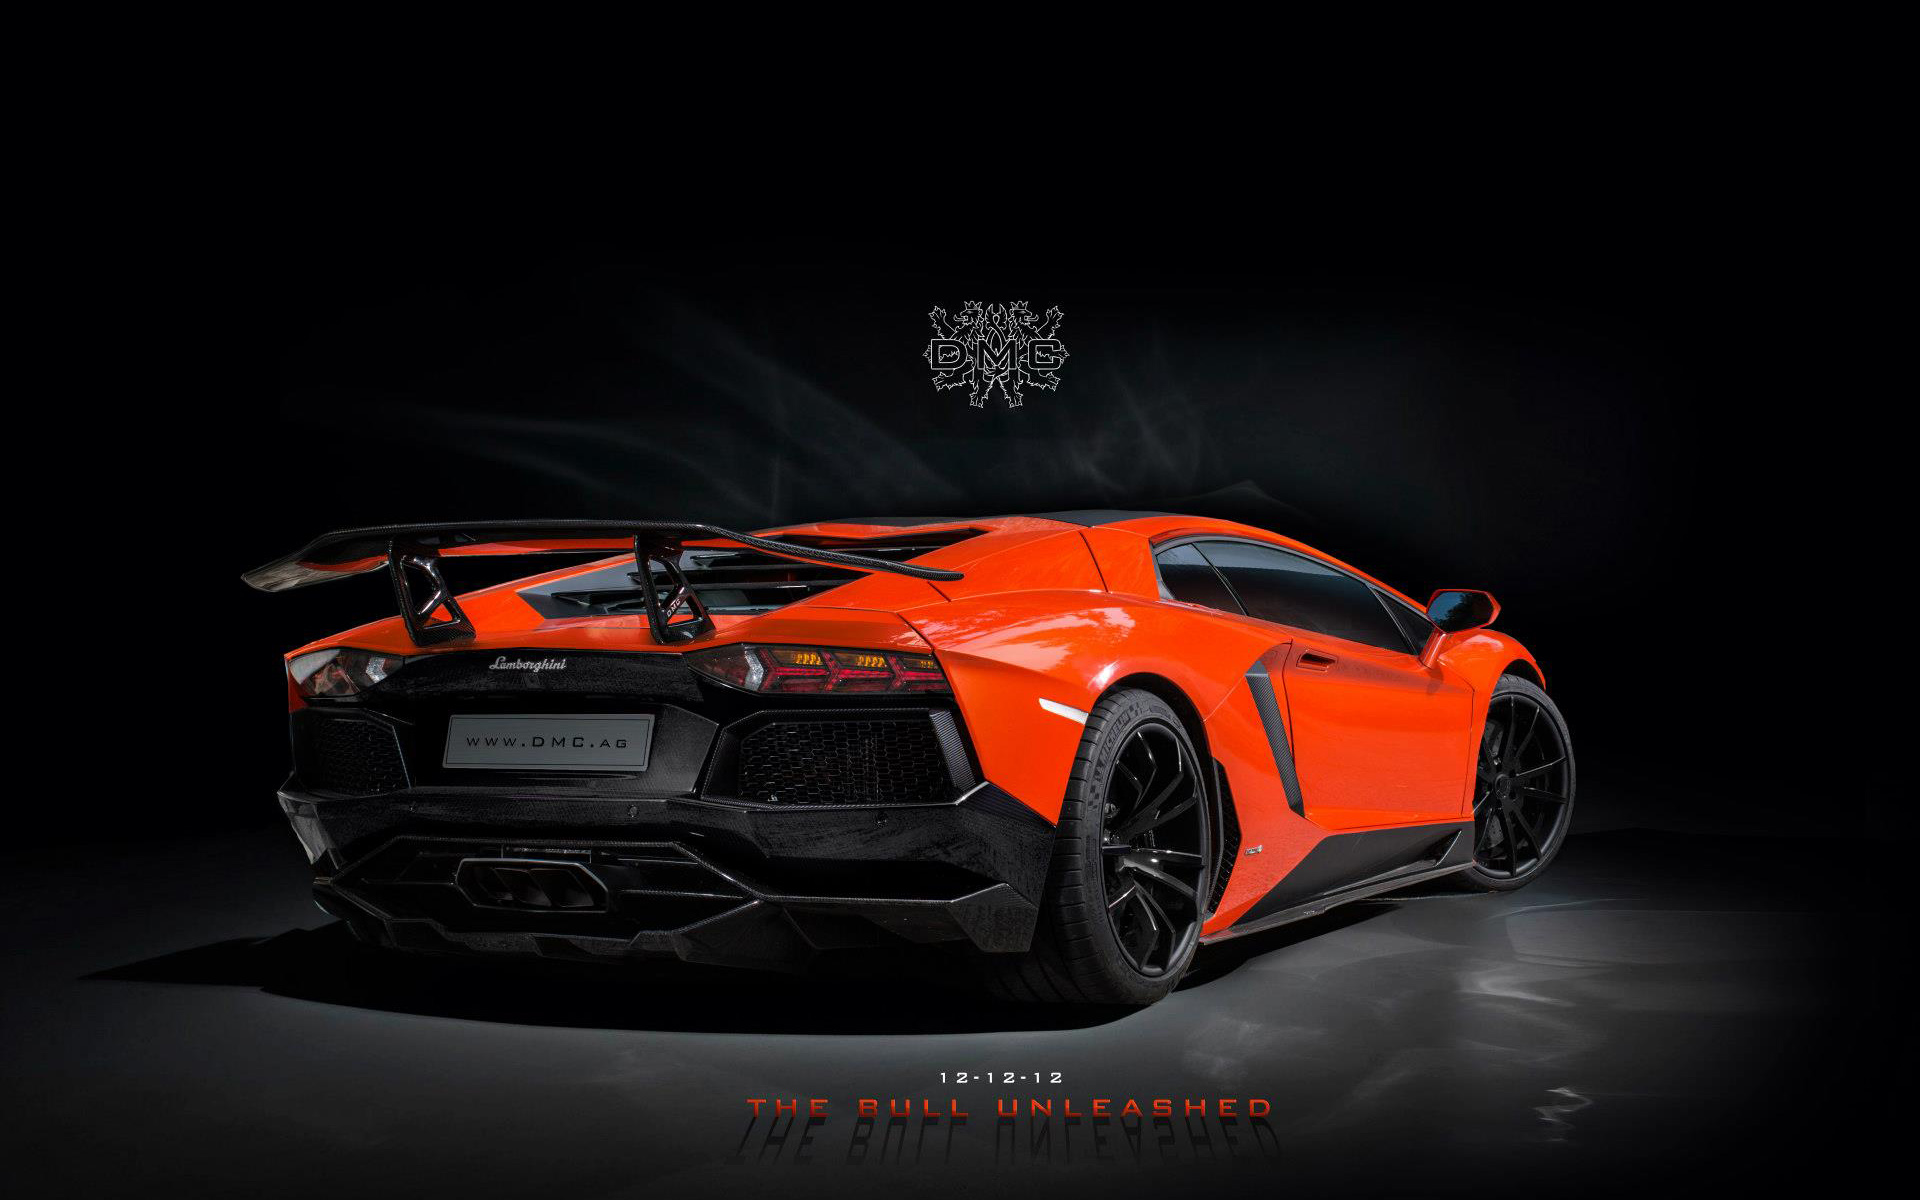 44+ HD Wallpapers Lamborghini Aventador on WallpaperSafari